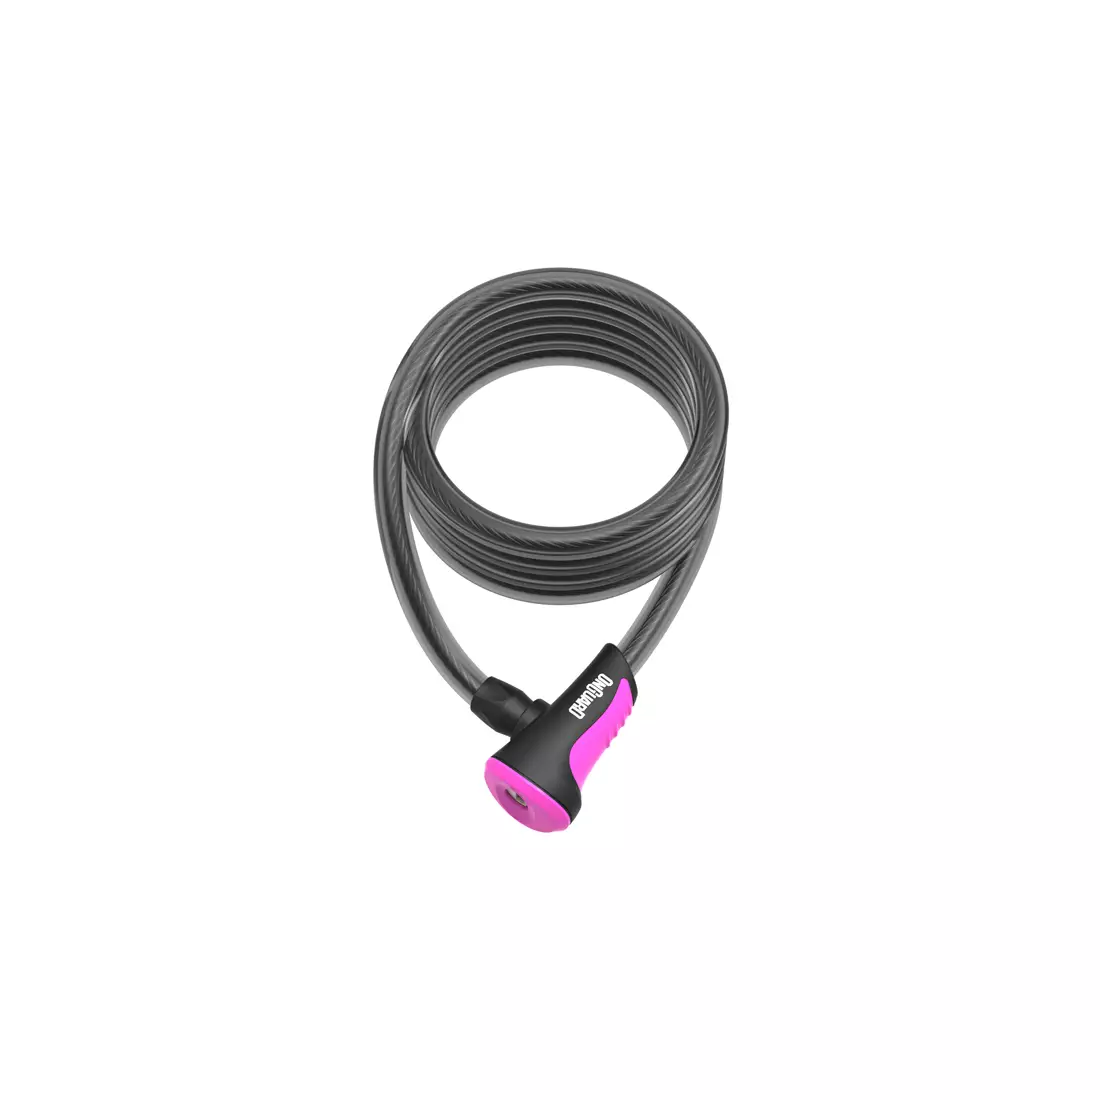 ONGUARD kerékpár csat neon 12mm 120cm + 2 x kulcsok kóddal pink ONG-8163PN